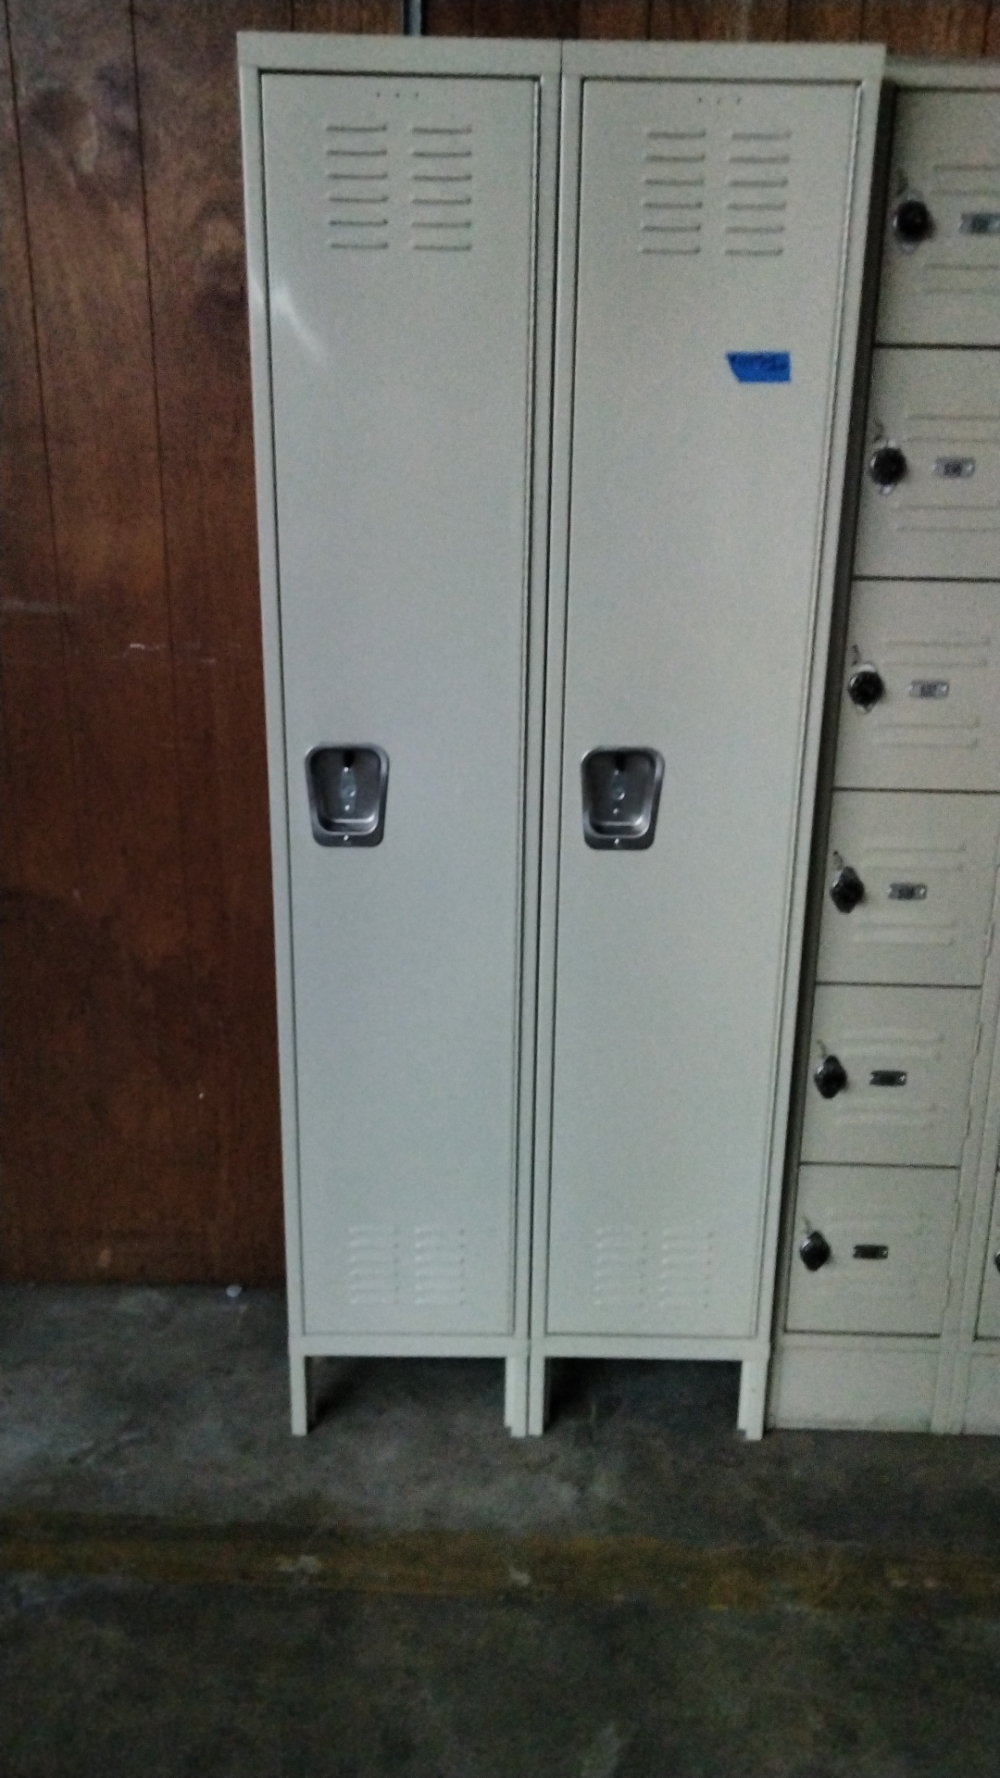  Vertical lockers